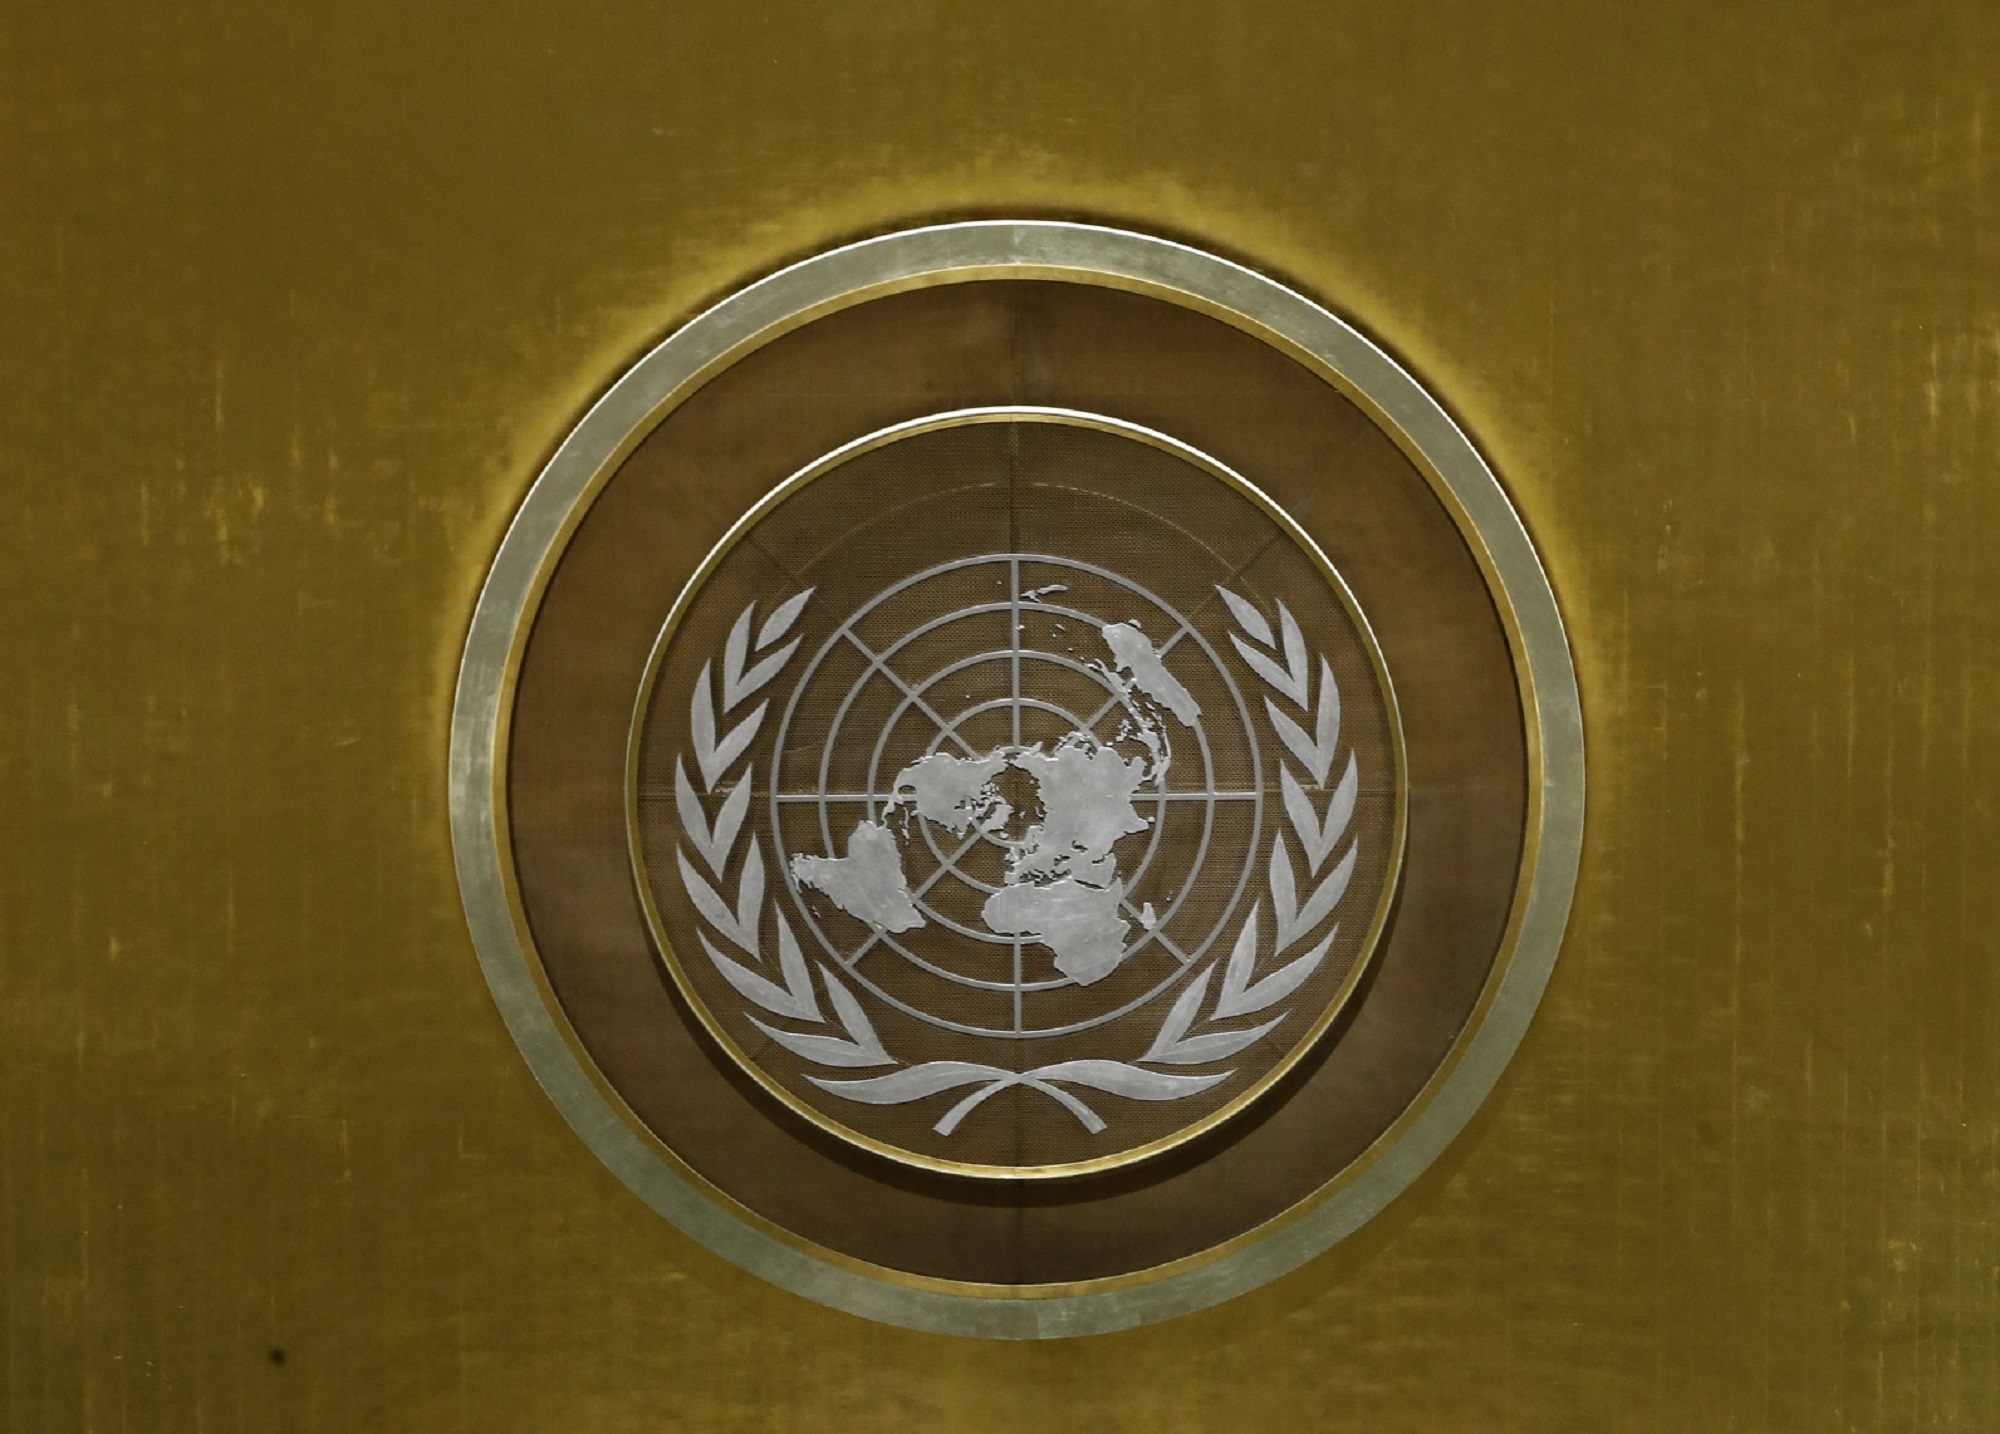 ΟΗΕ: Να συμμετάσχουν στο εγχείρημα της Κένυας για πολυεθνική δύναμη στην Αϊτή και άλλες χώρες